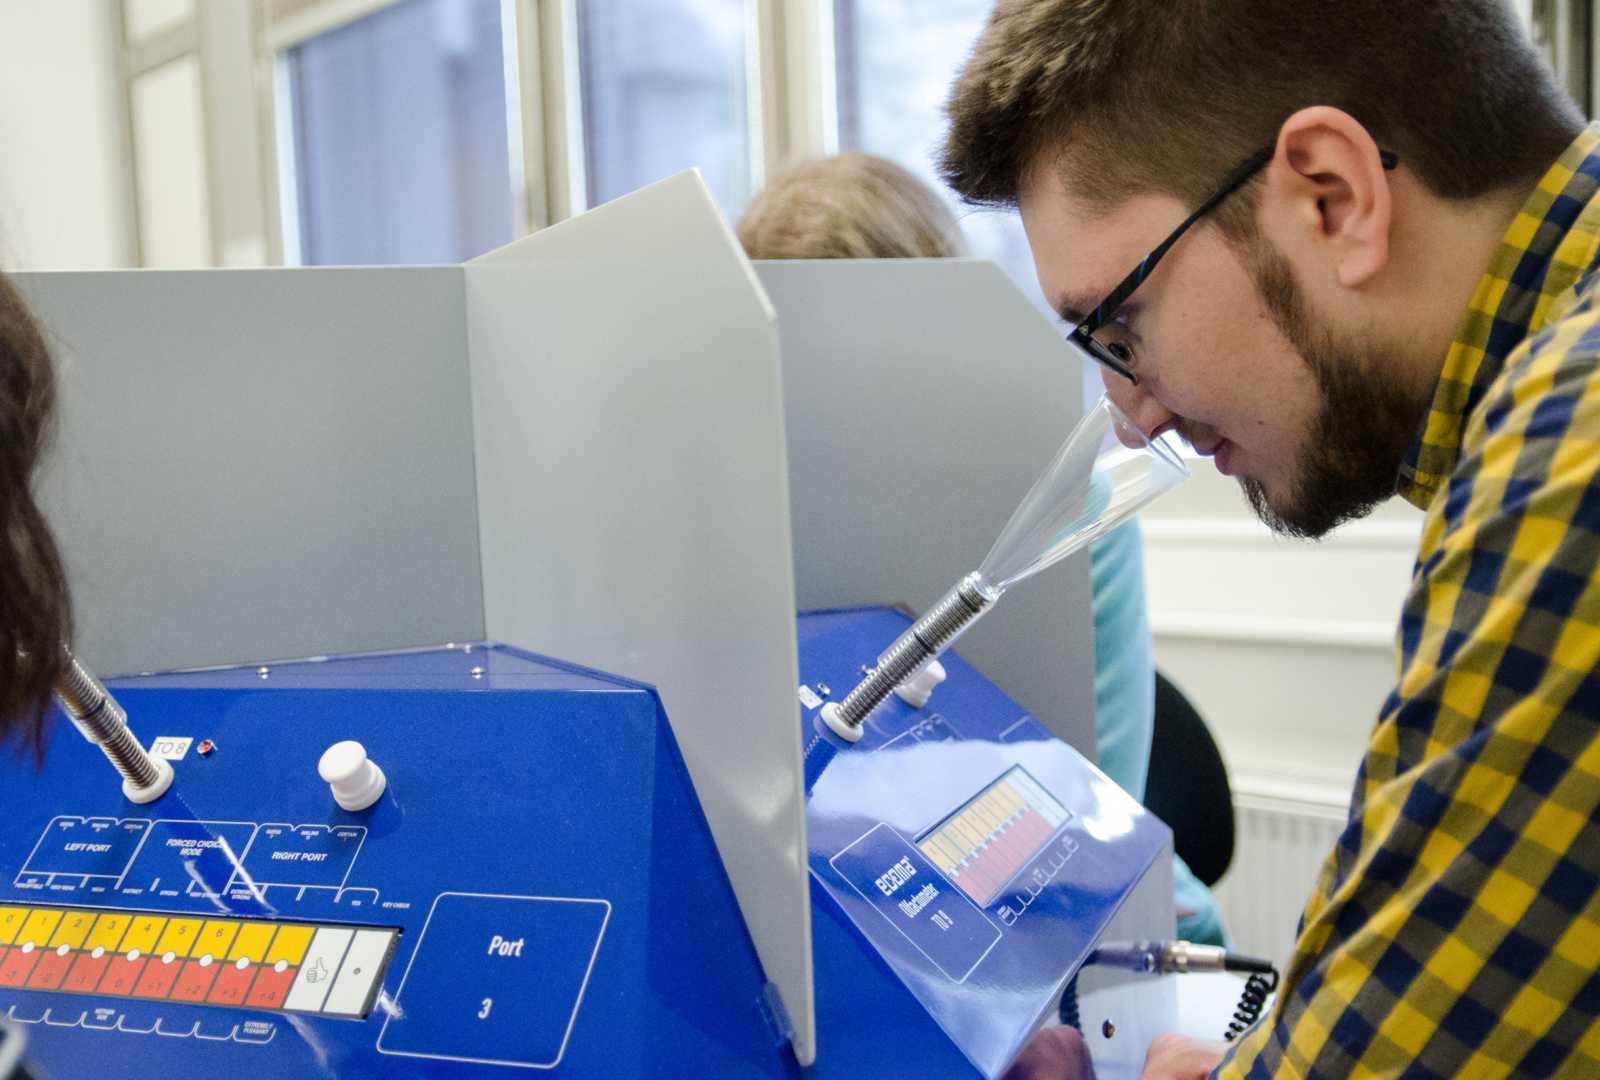 Um die Nase kommt man beim Gerüchemessen nicht herum: Die Schnupper-Studierenden testeten direkt selbst am Olfaktometer. (Foto: FH Münster/Pressestelle)